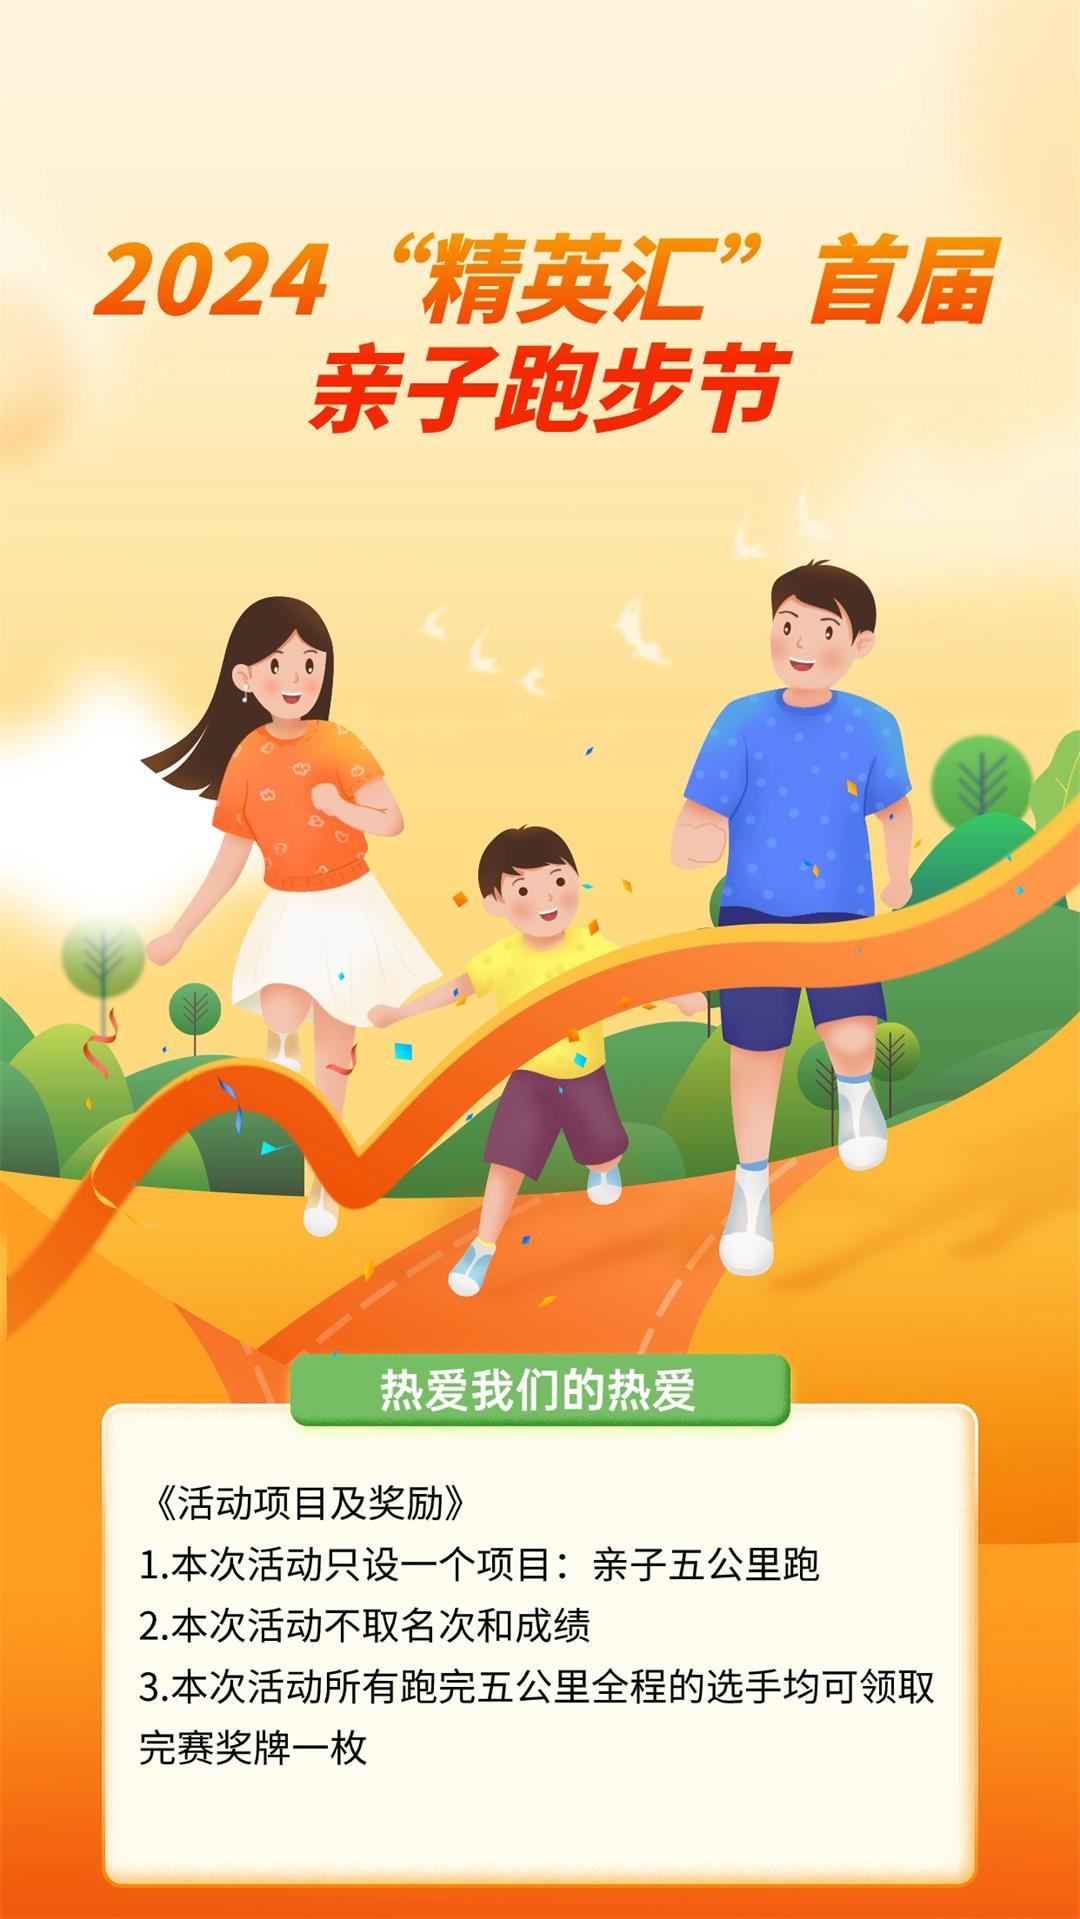 全民健身亲子家庭教育机构手机海报 (2).jpg